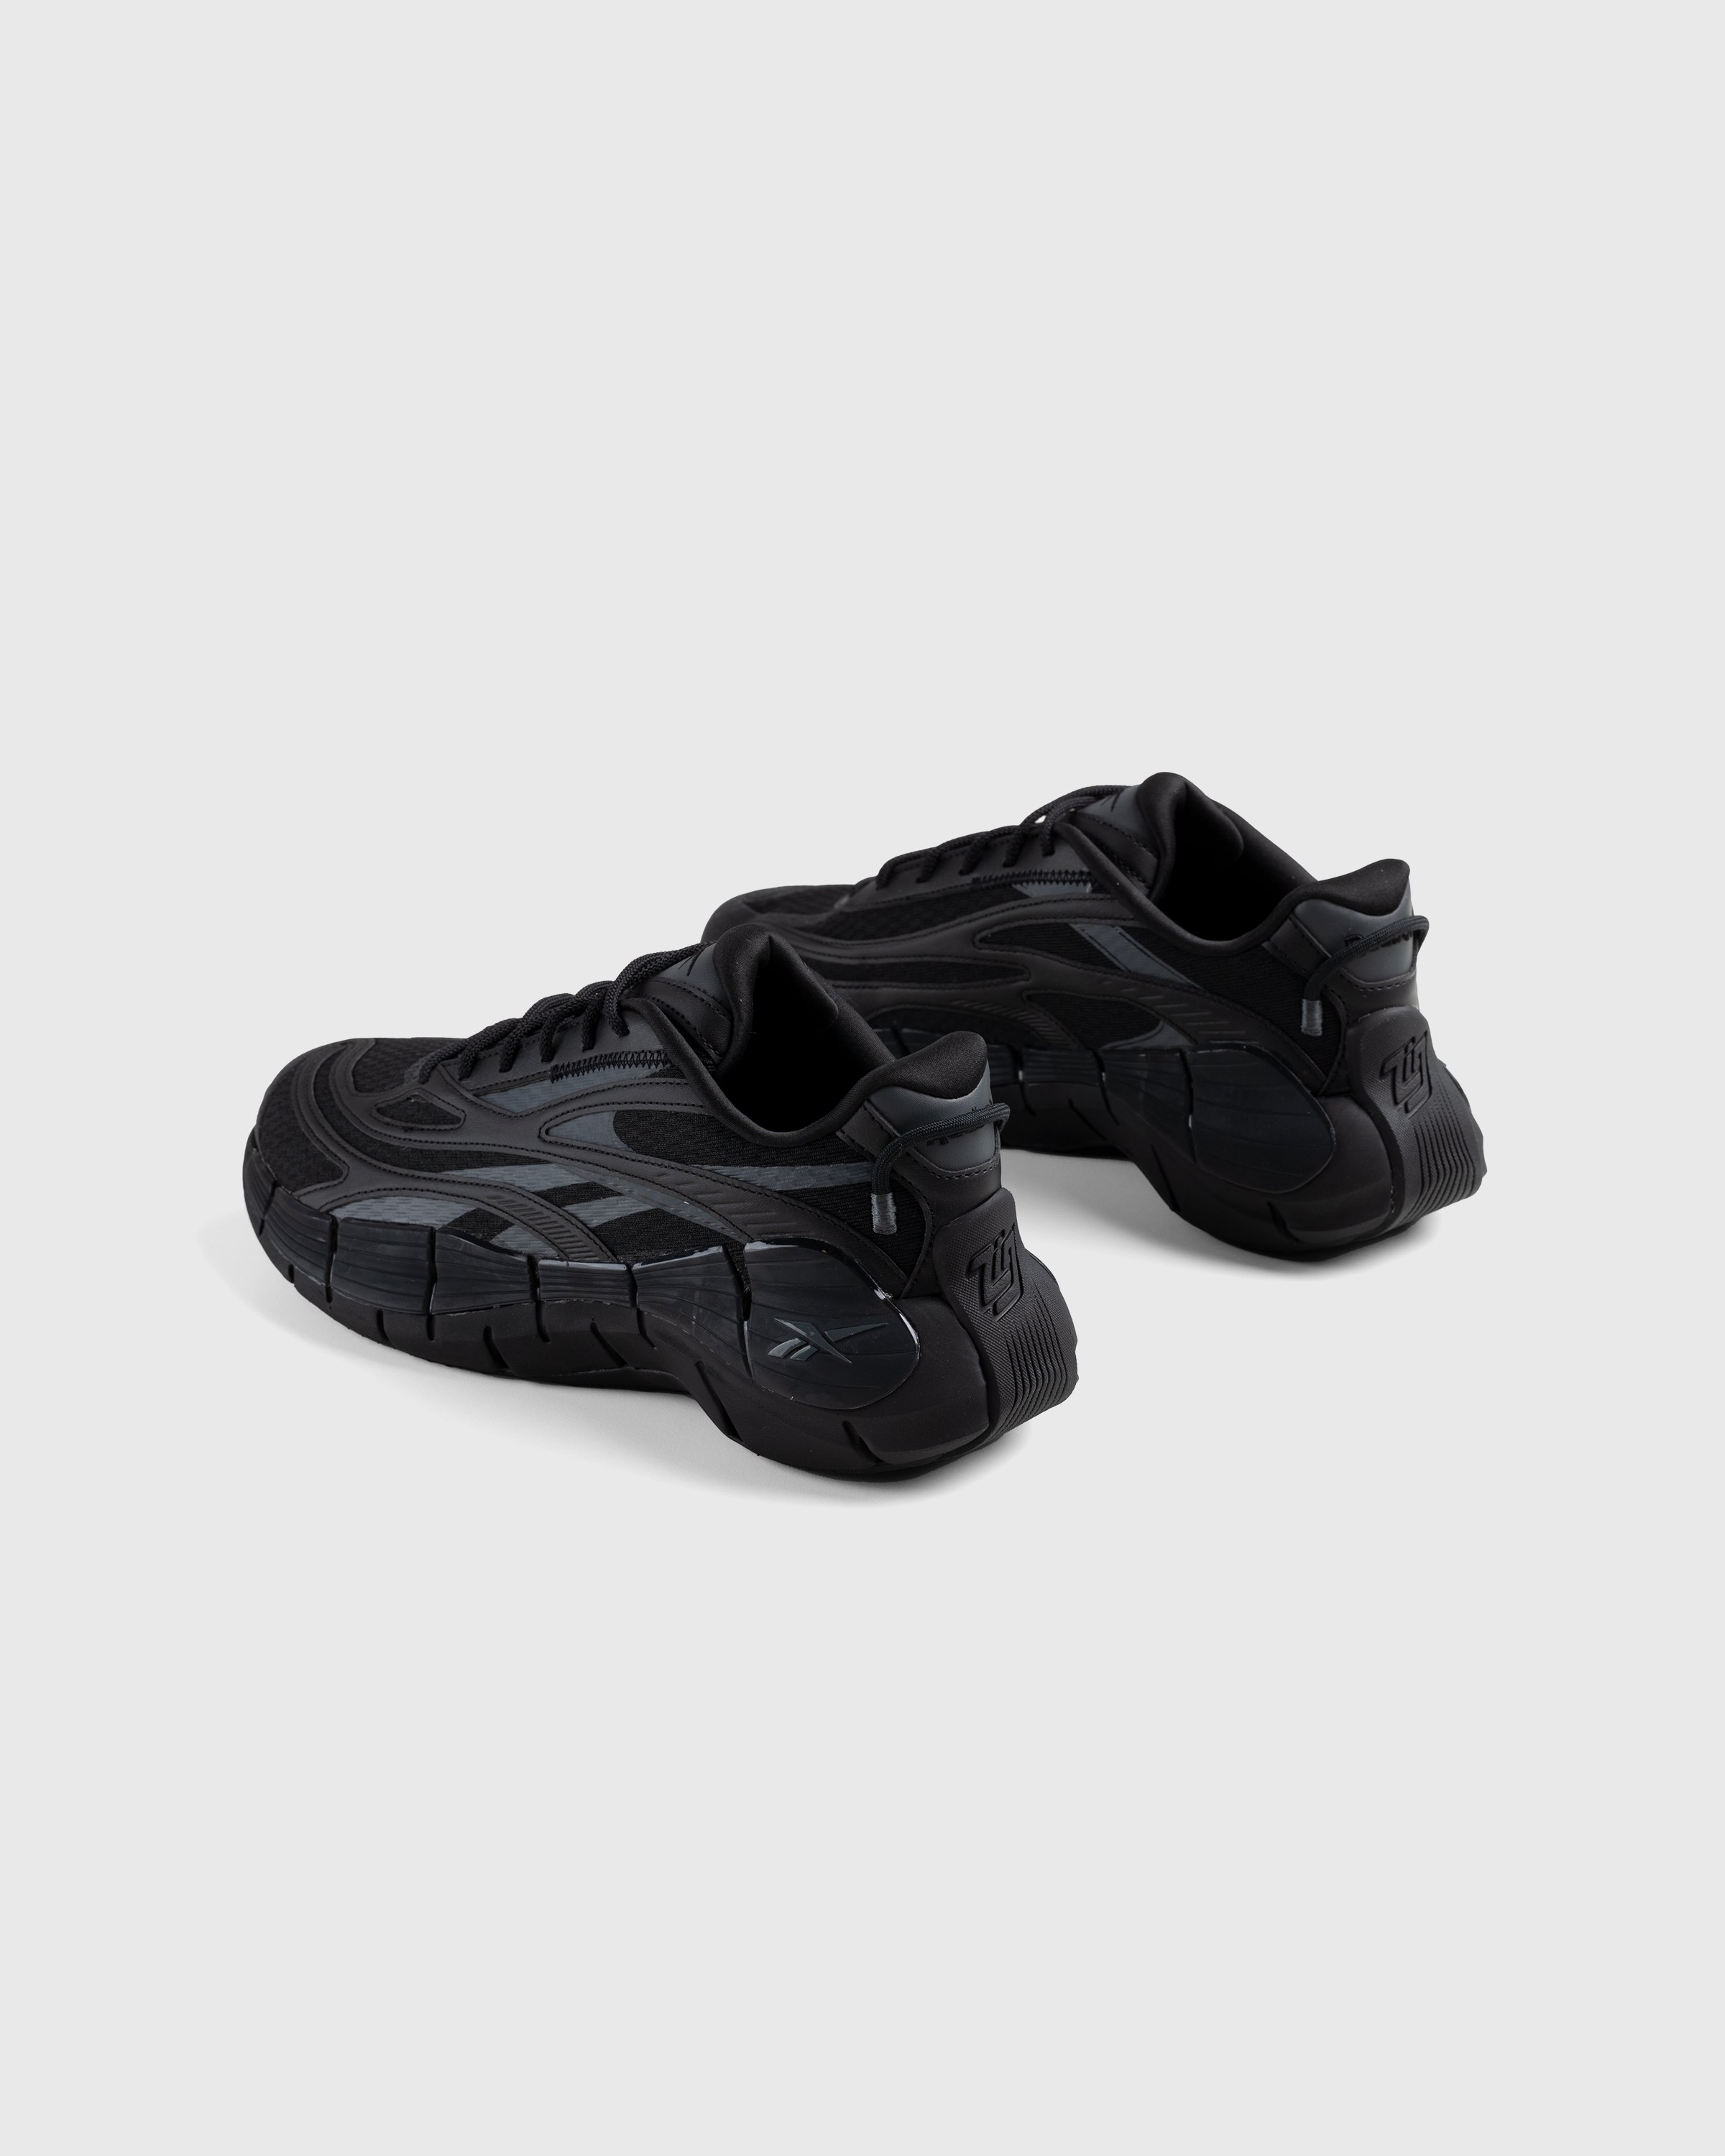 Reebok - Zig Kinetica 2.5 Black - Footwear - Black - Image 2